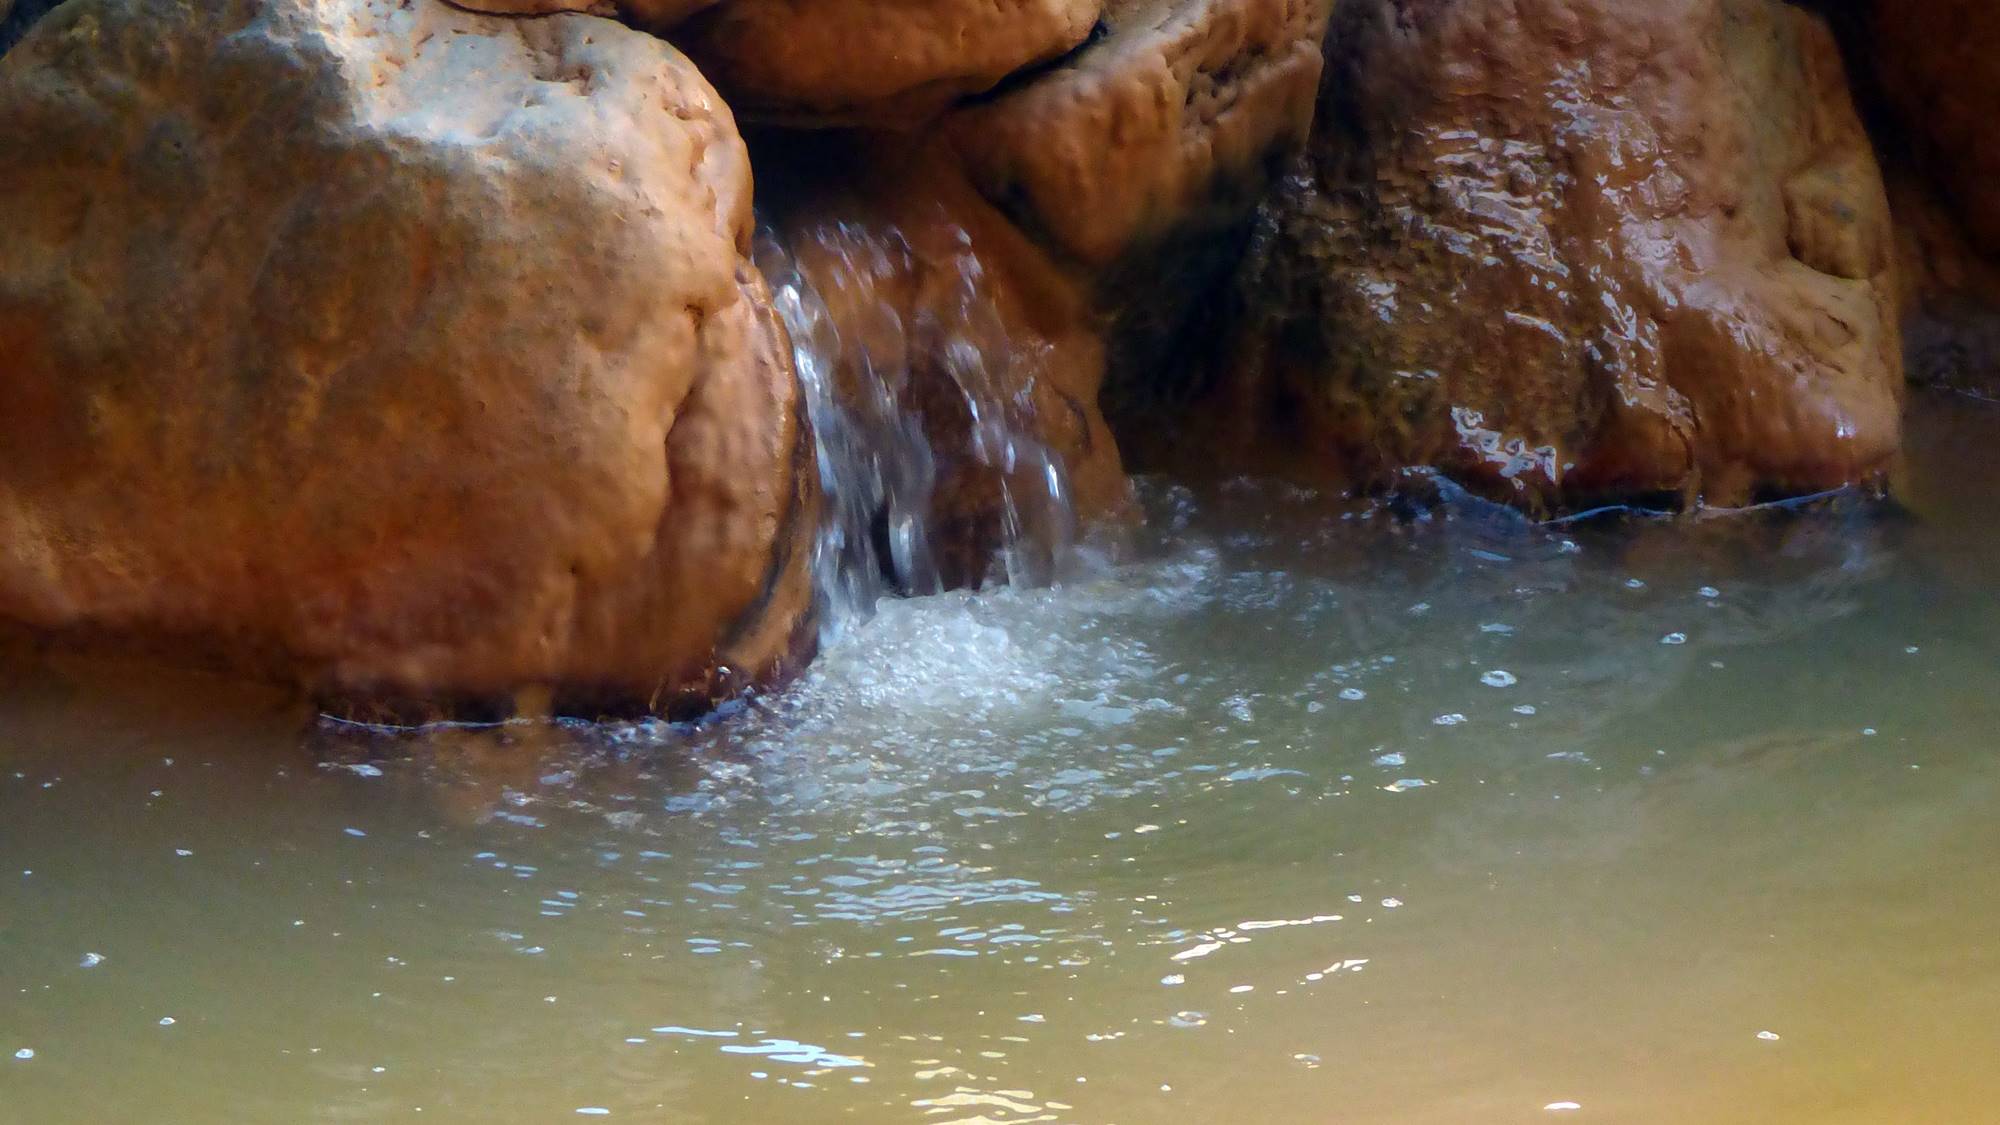  *塩分と水酸化鉄を含み、体が良く温まると評判の相間川温泉。